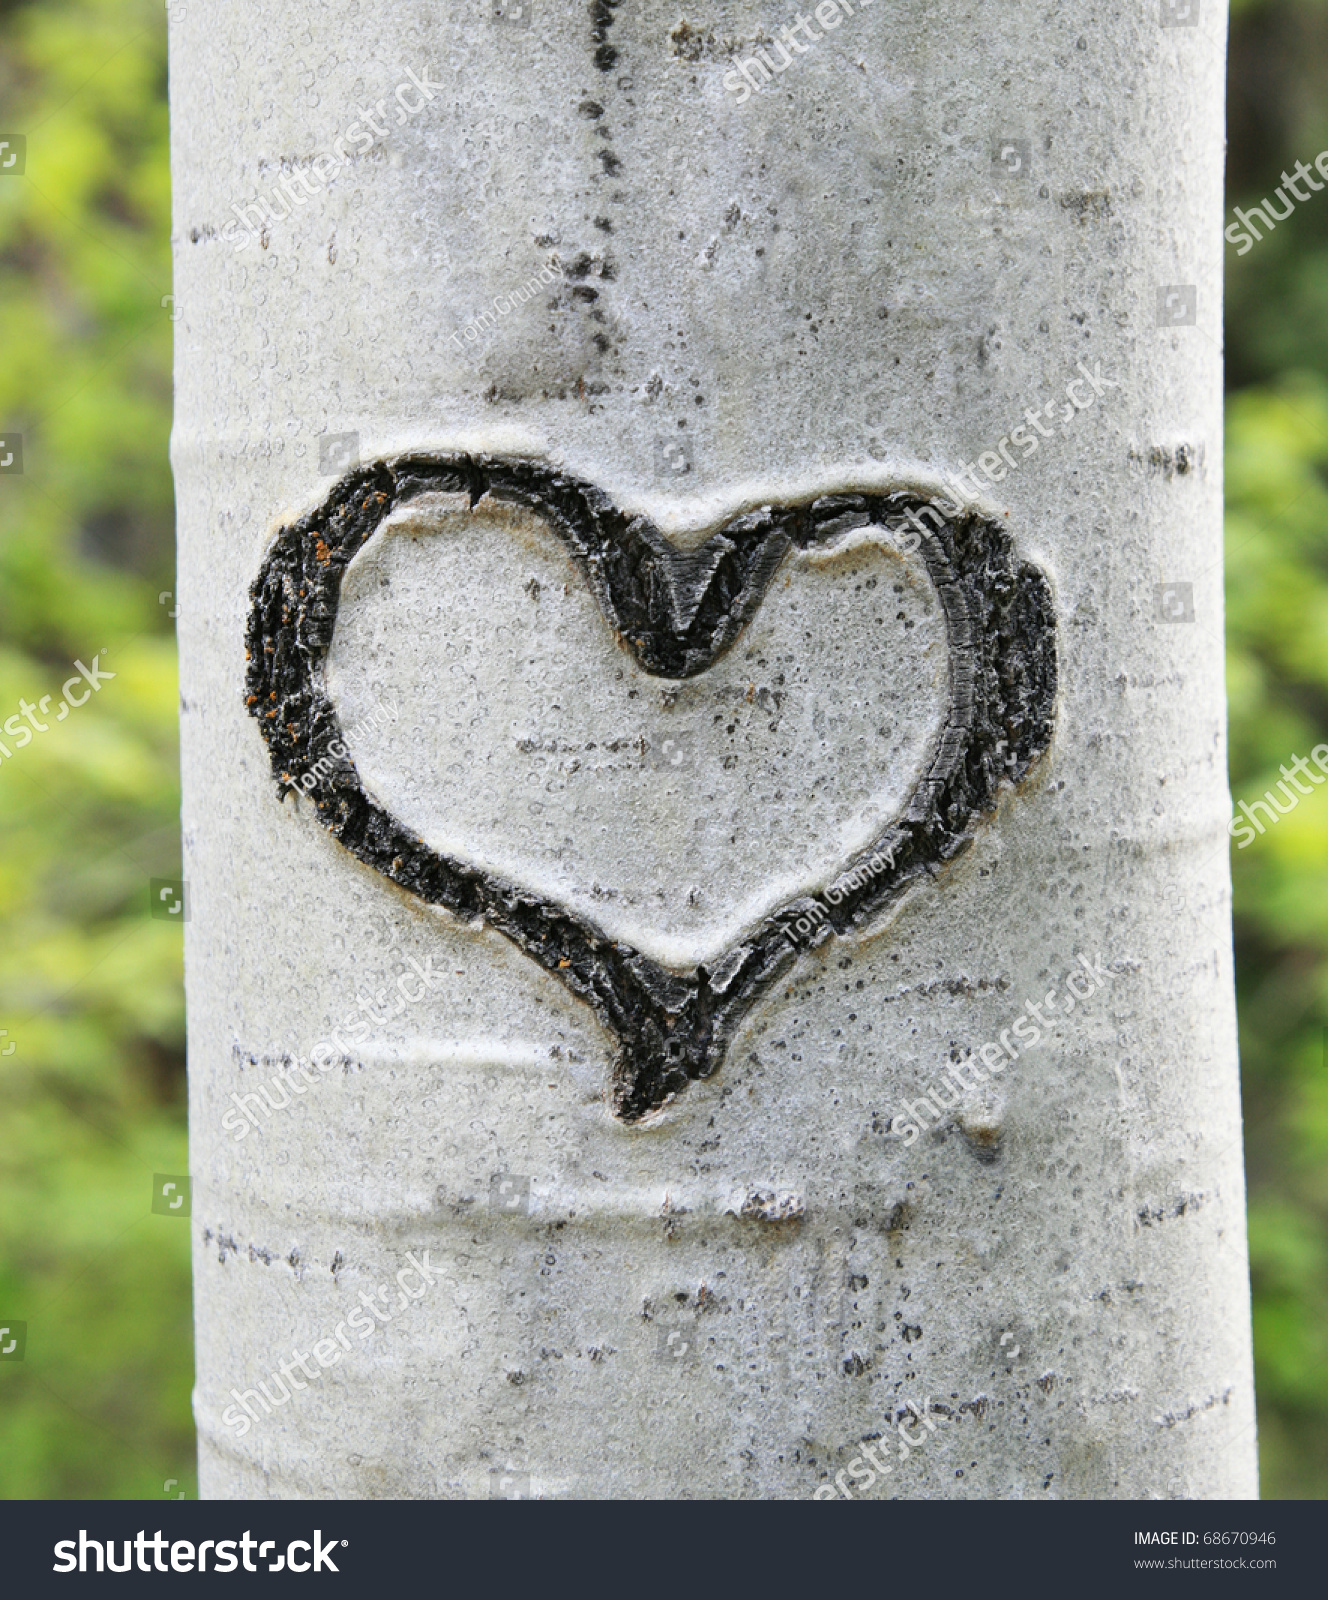 http://image.shutterstock.com/z/stock-photo-heart-carved-in-white-aspen-trunk-bark-68670946.jpg